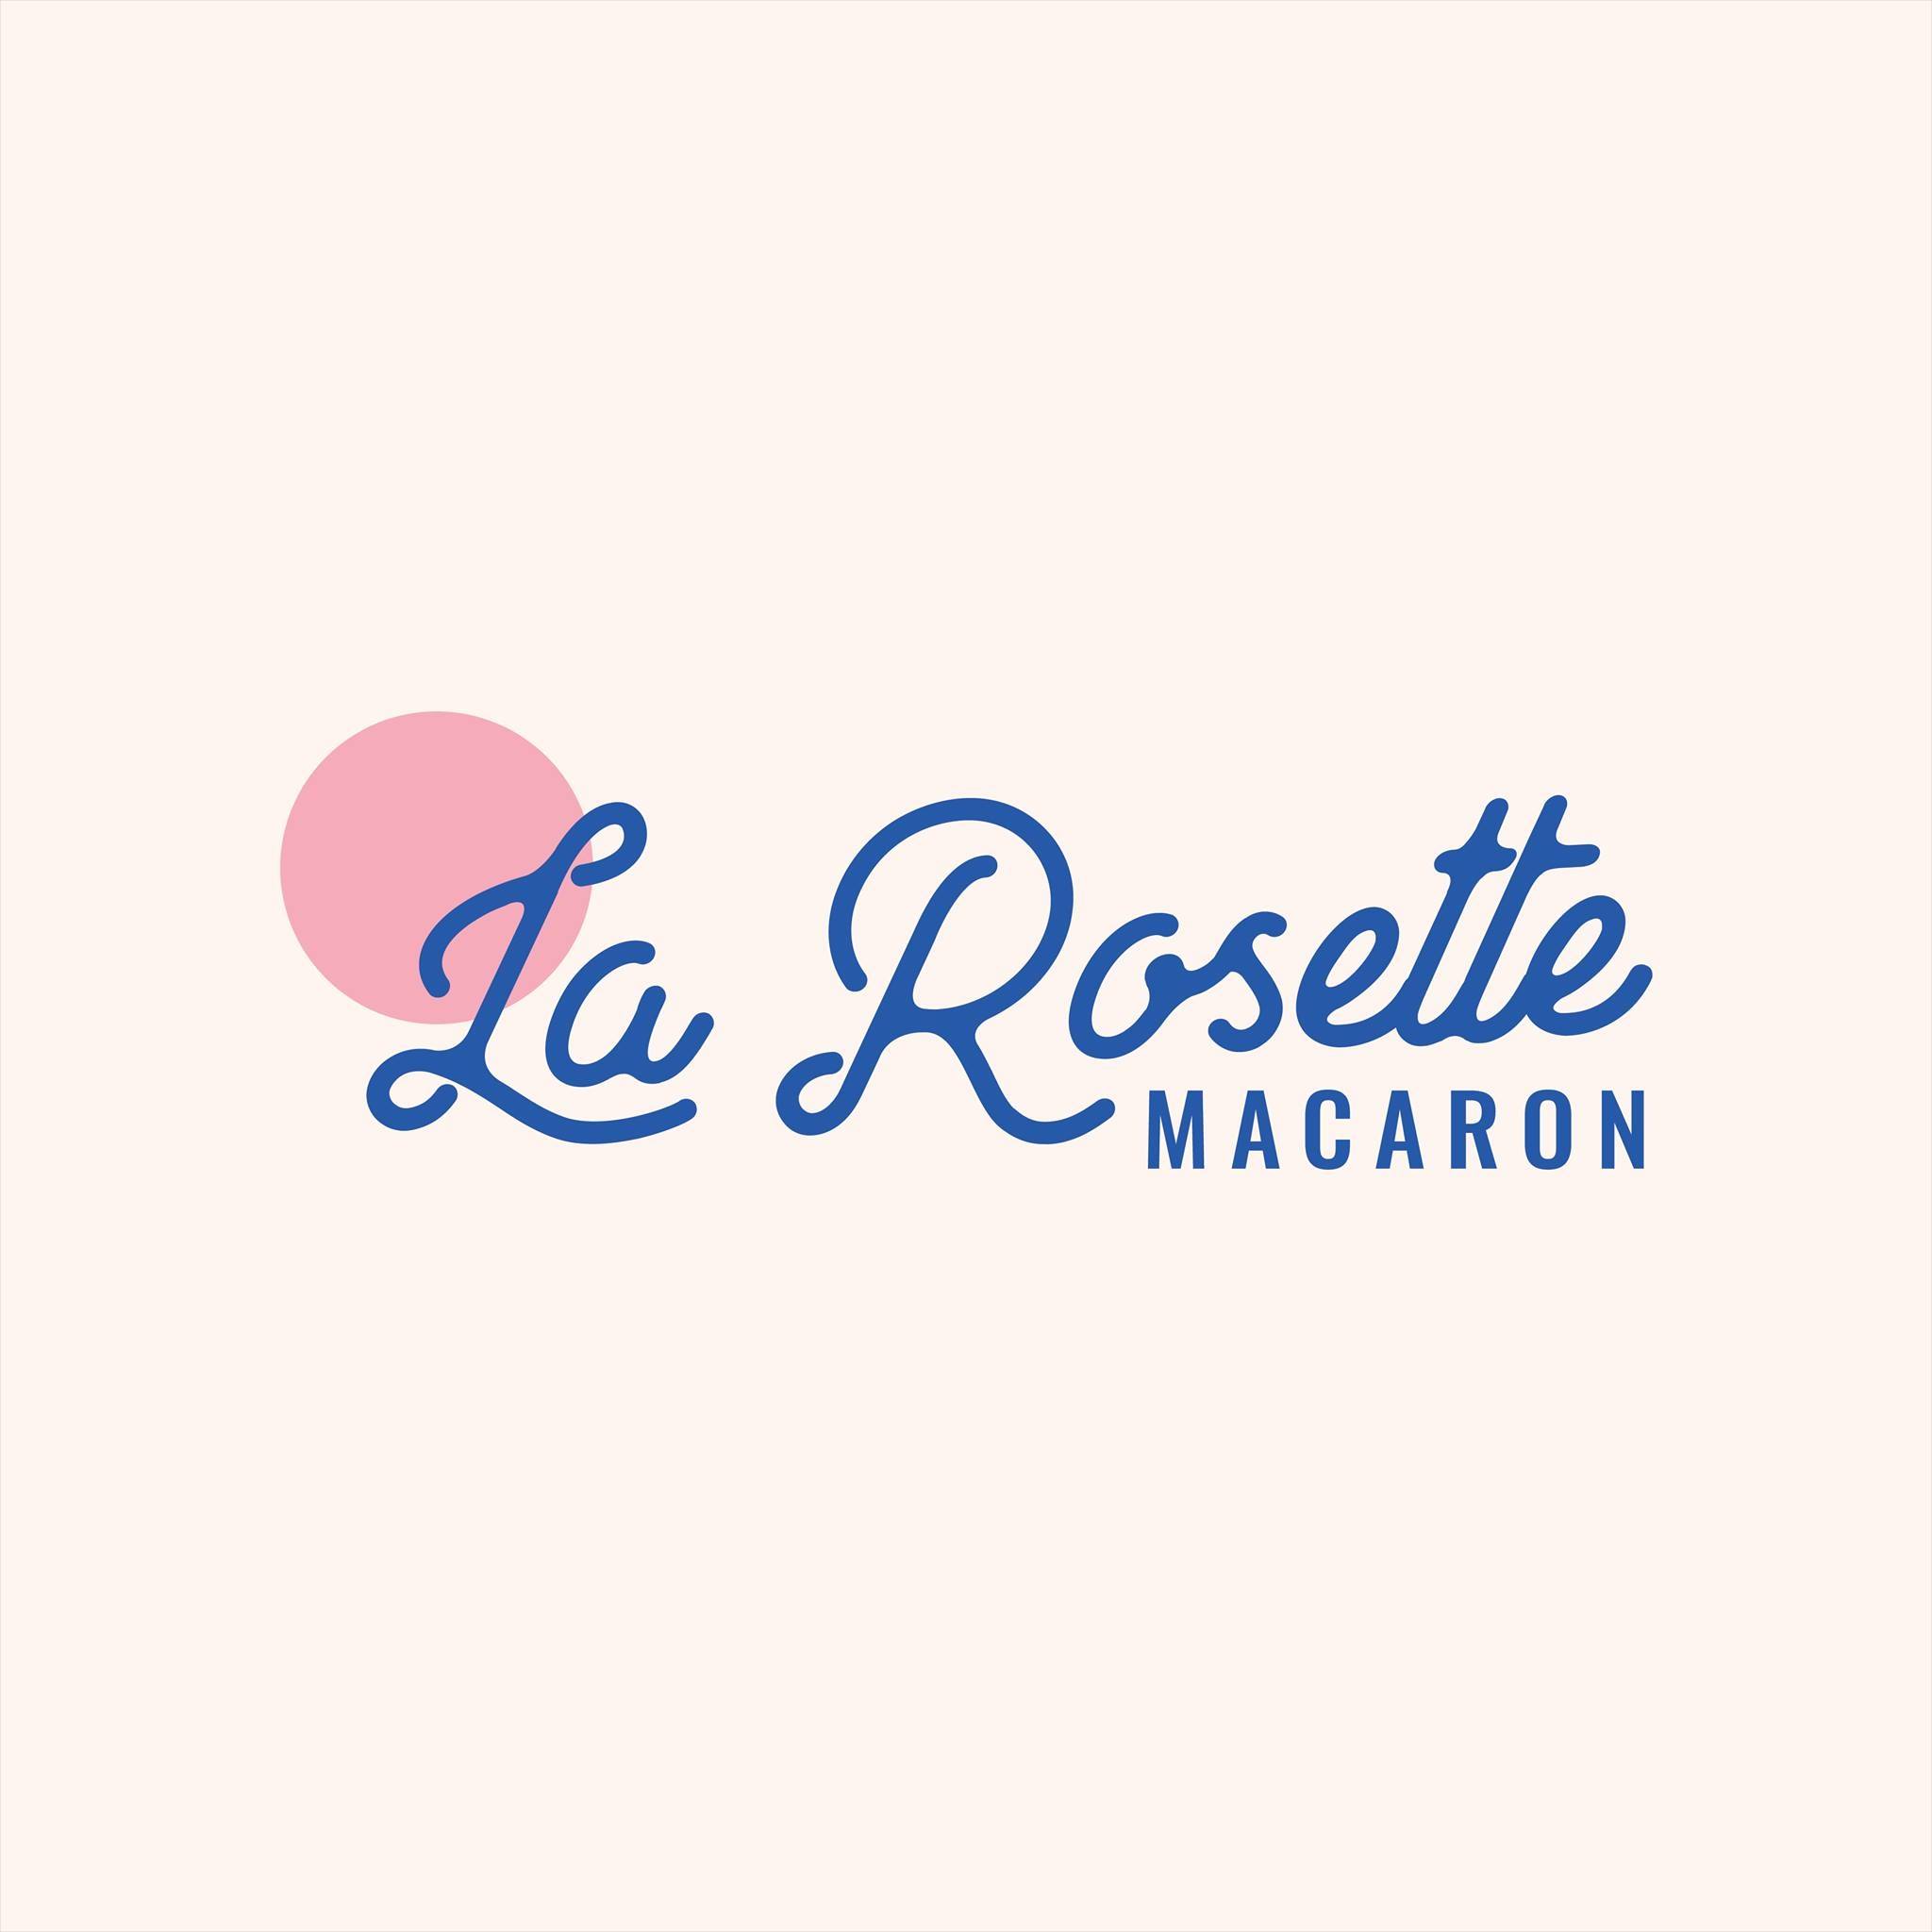 La Rosette Macaron thường bán online trên các mạng xã hội và app ăn uống